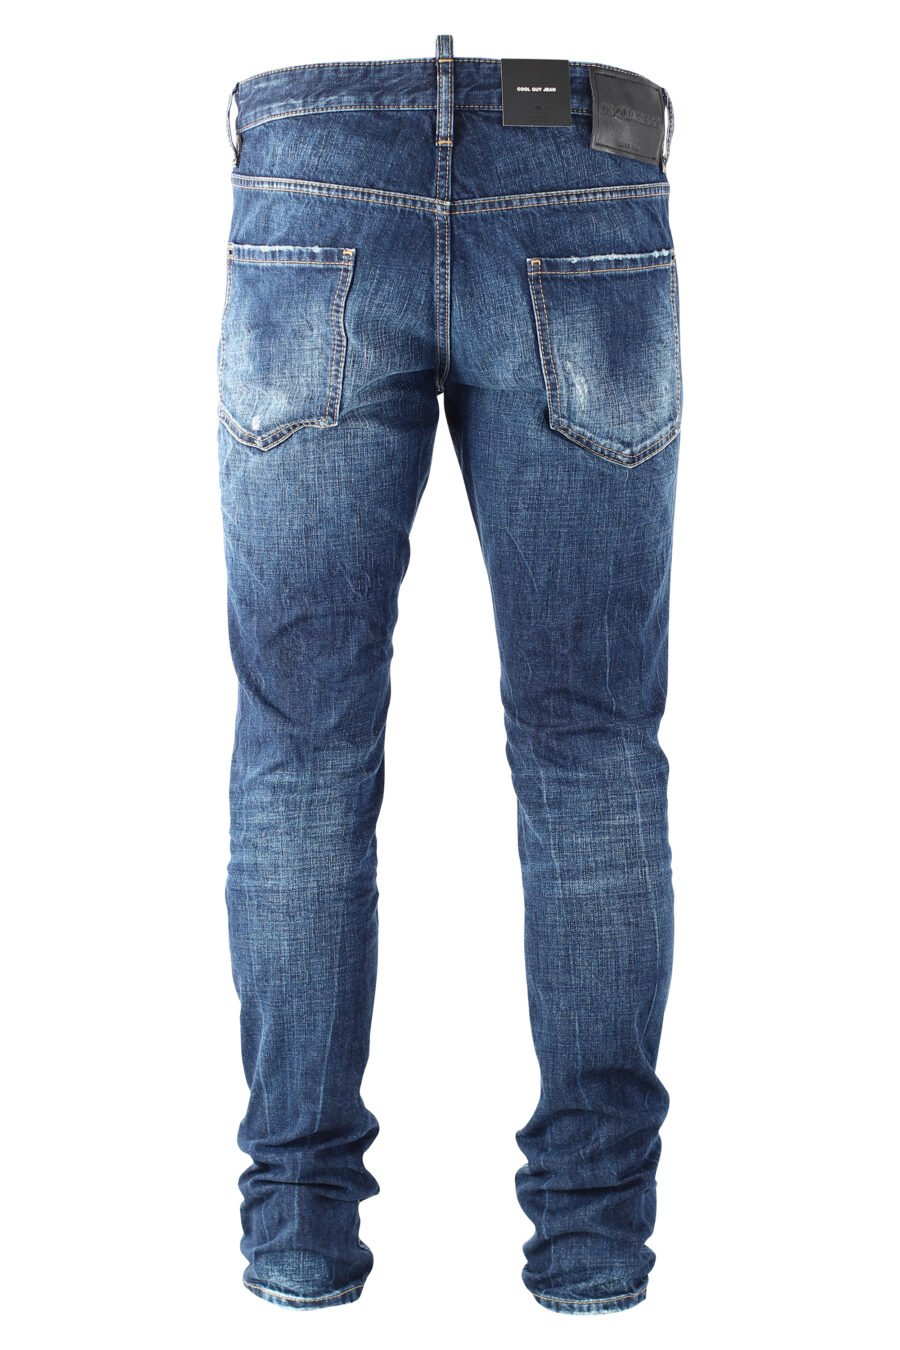 Pantalón vaquero "cool guy jean" azul con logo "D2" negro - IMG 9689